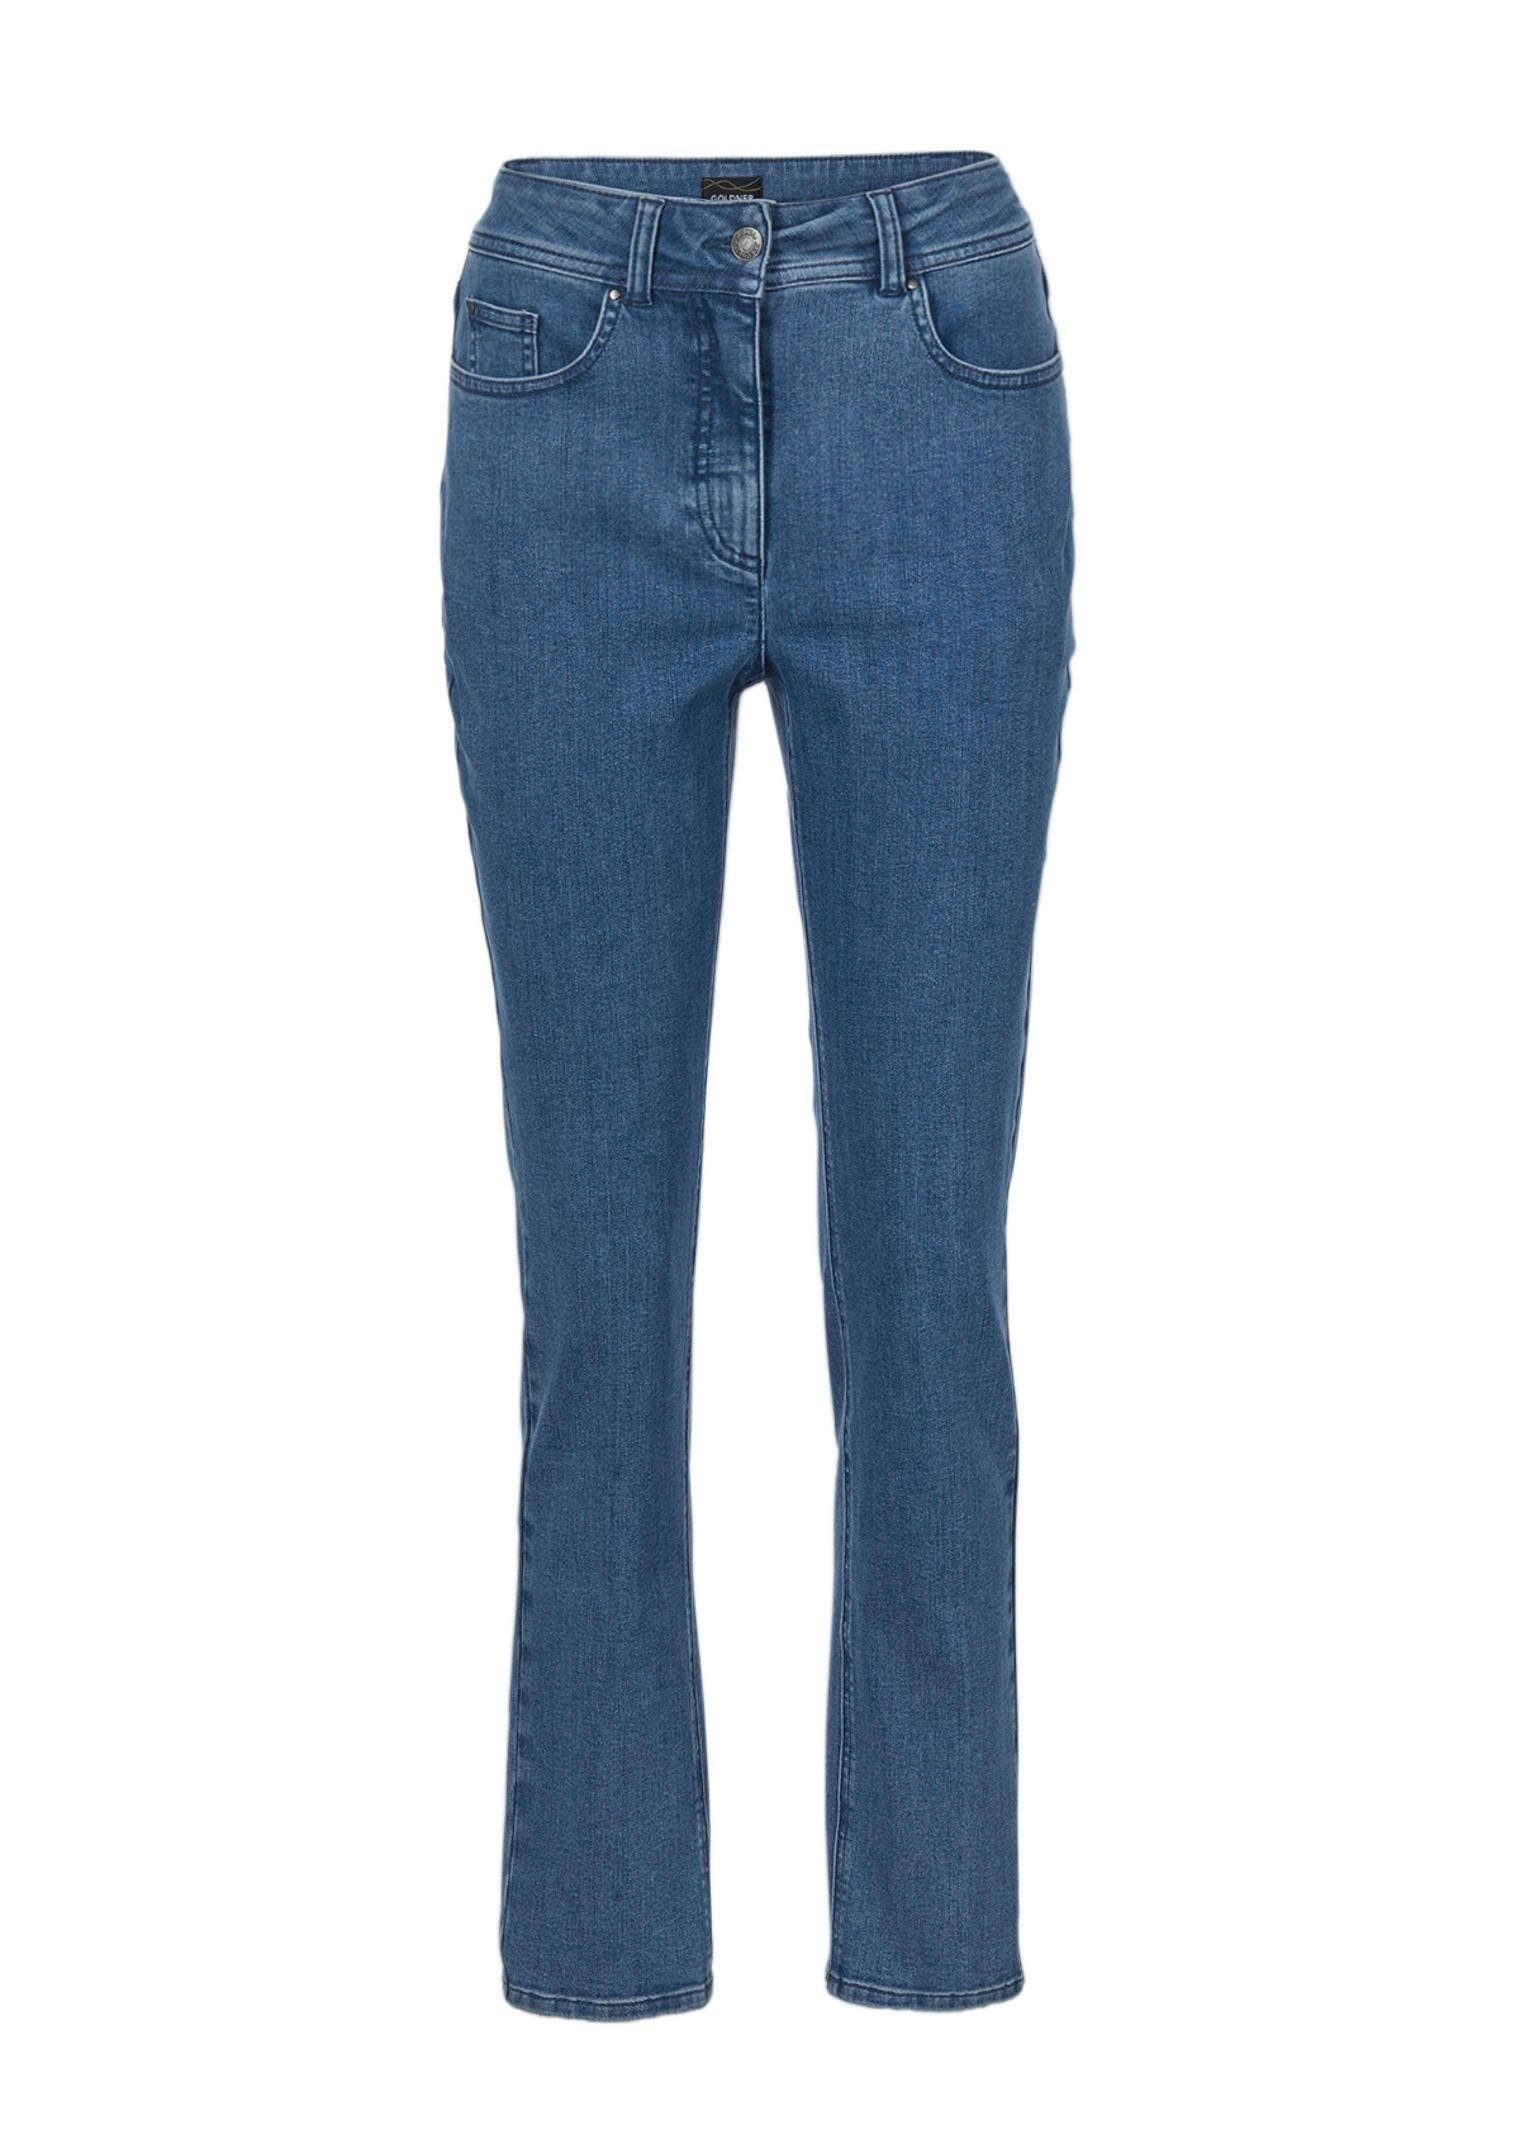 GOLDNER Bequeme Jeans Kurzgröße: Superbequeme Hose mit Bauchweg-Effekt marine